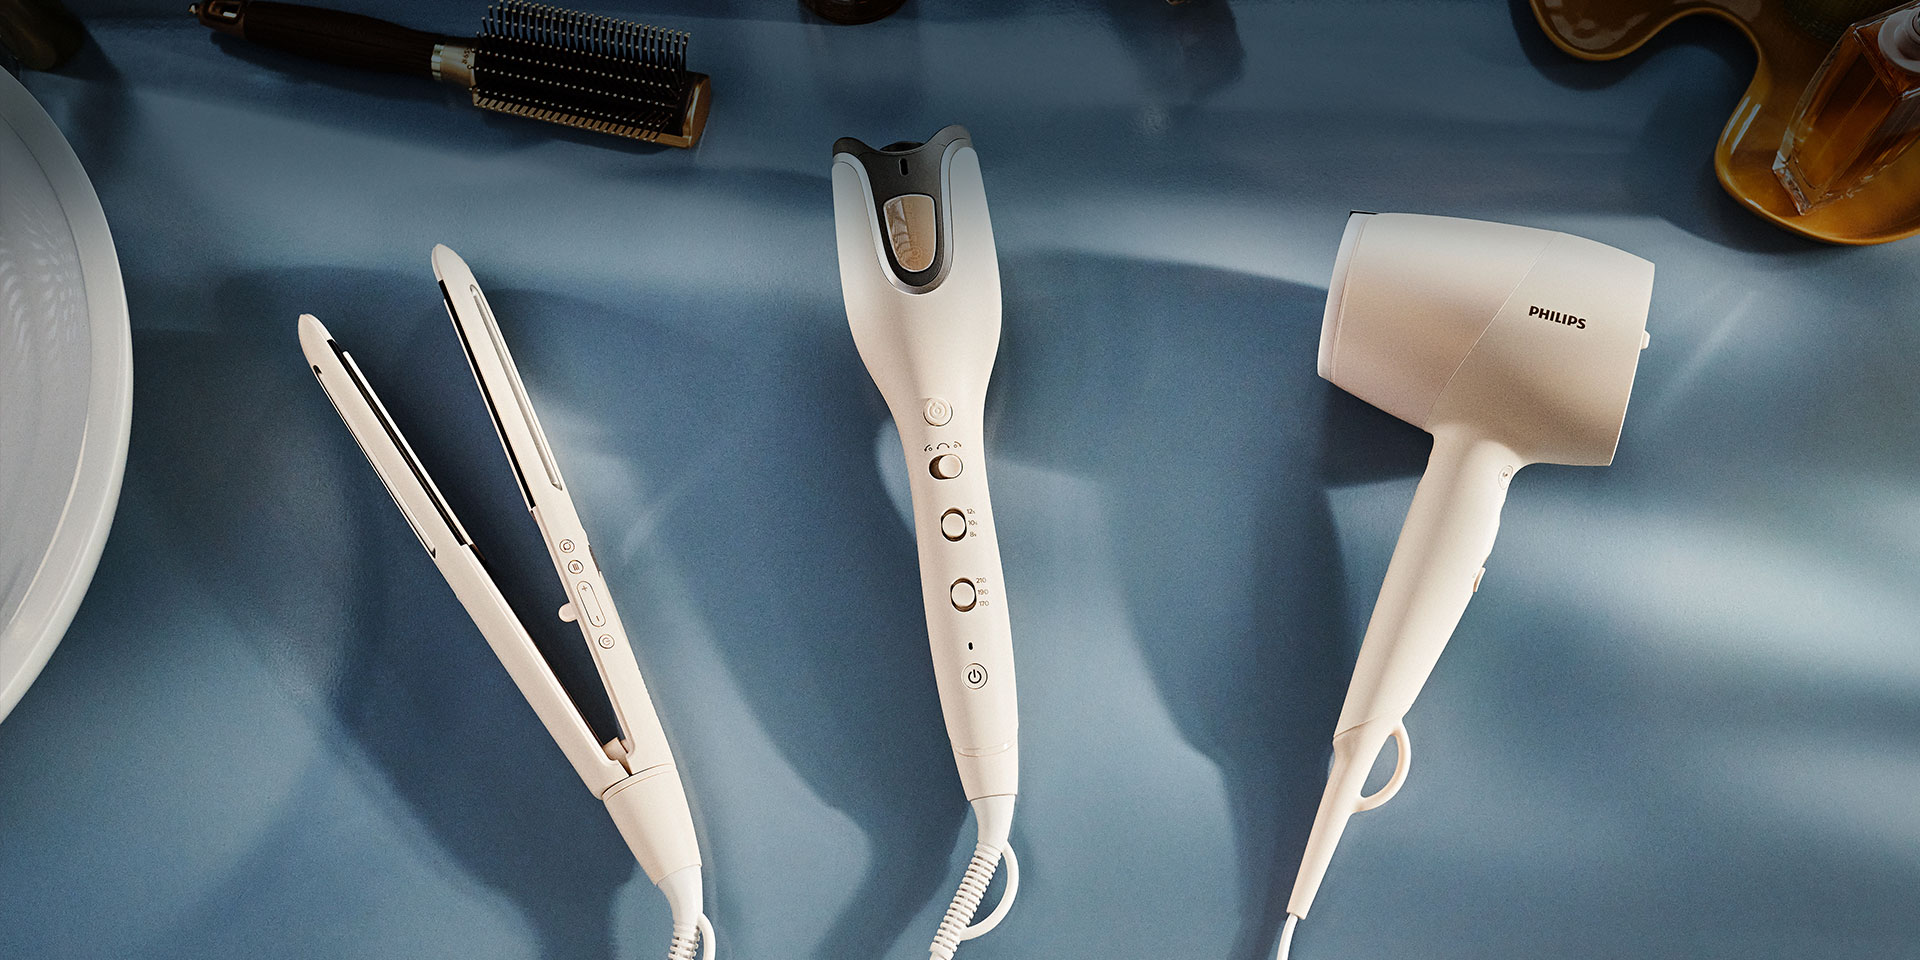 Pozostałe inteligentne produkty do pielęgnacji i stylizacji włosów z serii Philips SenseIQ: prostownica i suszarka.